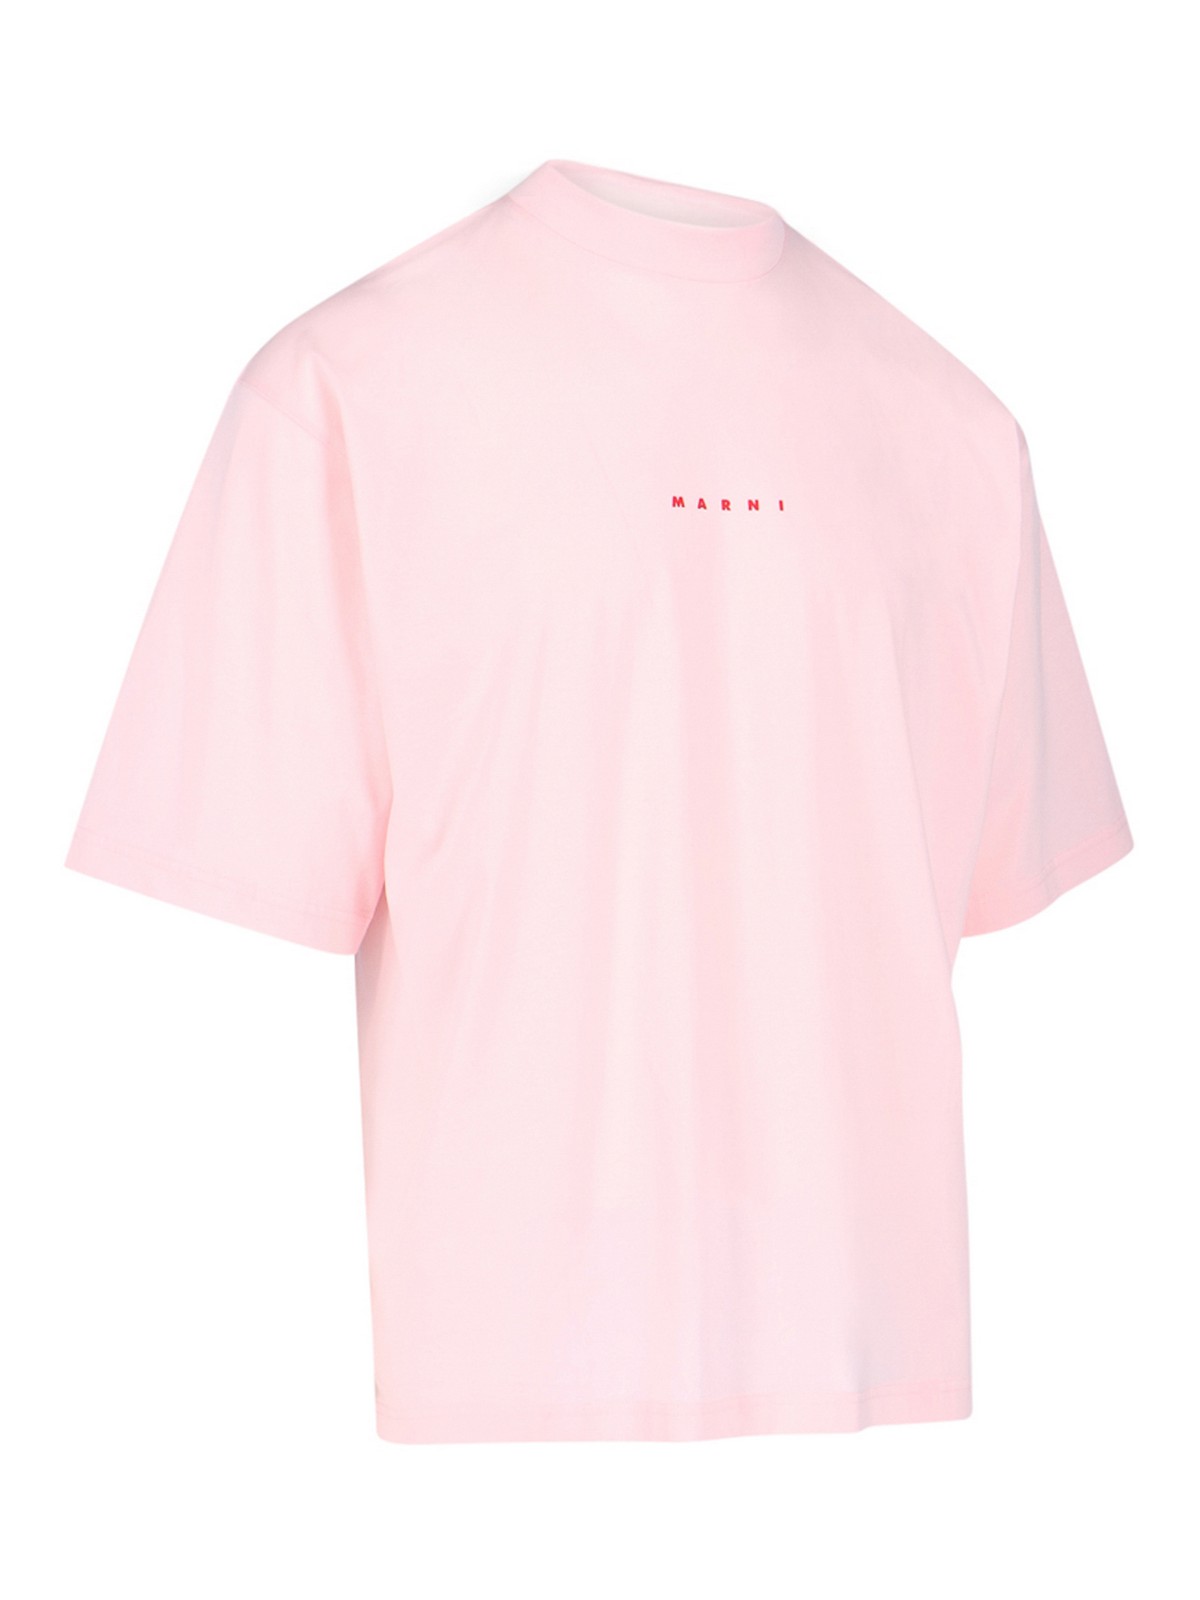 Camisetas Marni - Camiseta - Color Carne Y Neutral - HUMU0223P1USCS87L1C13